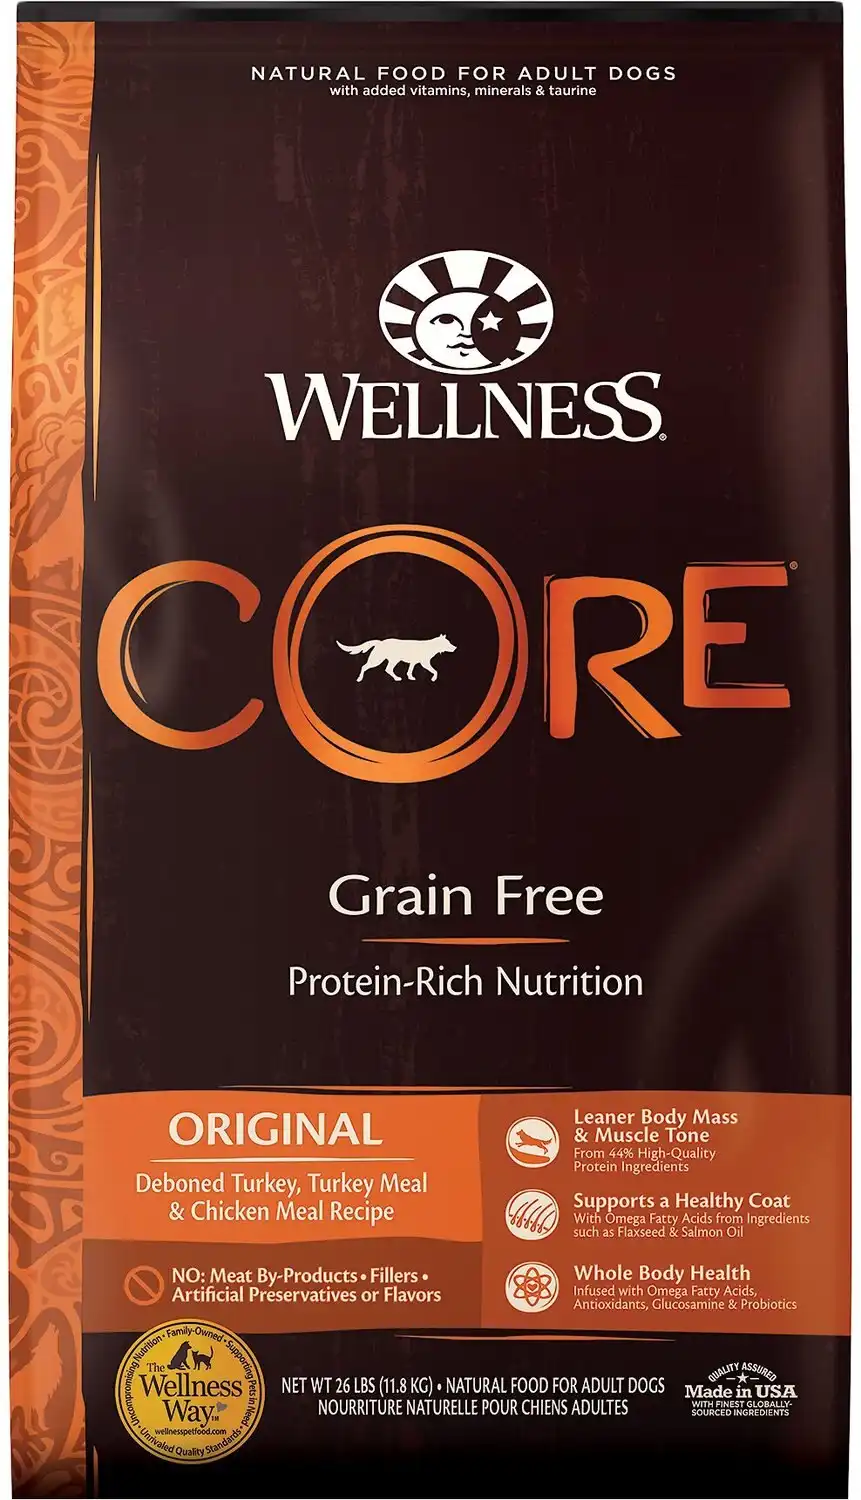 Wellness CORE Grain-Free Original Pienso deshuesado de Pavo, Harina de Pavo y Harina de Pollo